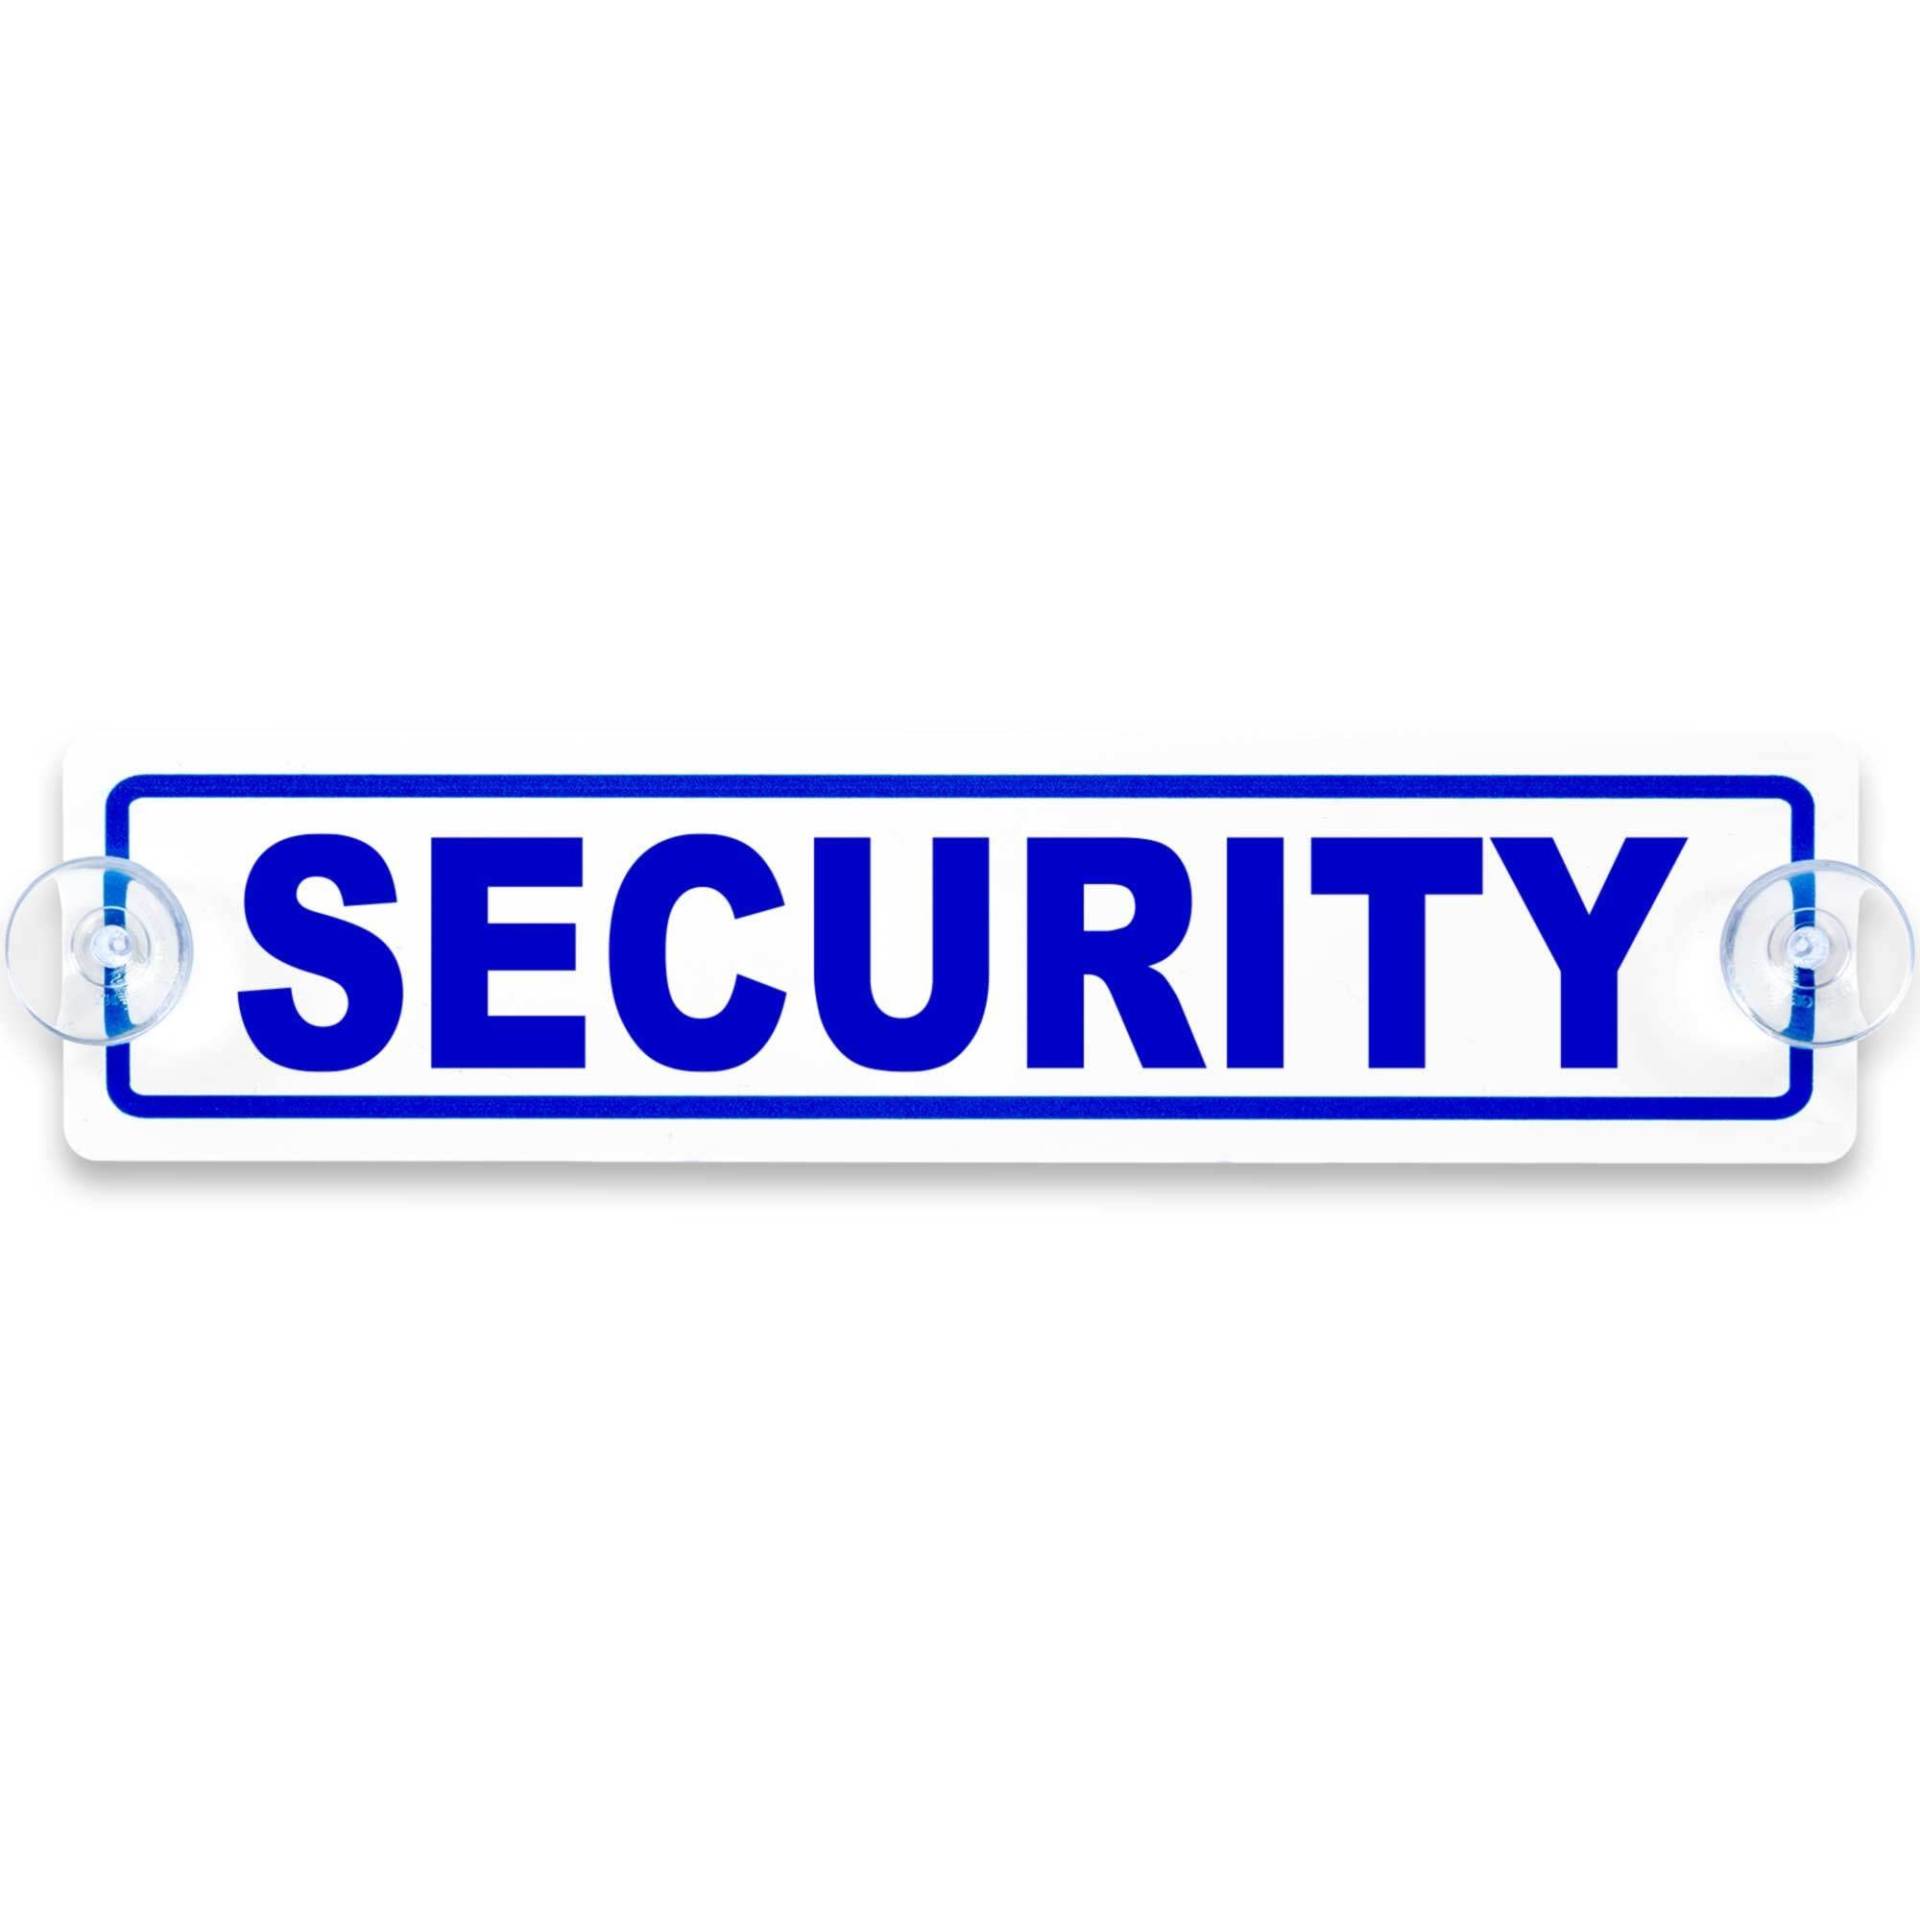 Schilderio Premium Saugnapfschild Schild Security 3 mm Acrylglas ca 200x50 mm Security Schild Auto mit 2 Saugnäpfen 20 mm Autoschild Security zur Befestigung an Autoscheiben von innen von Schilderio